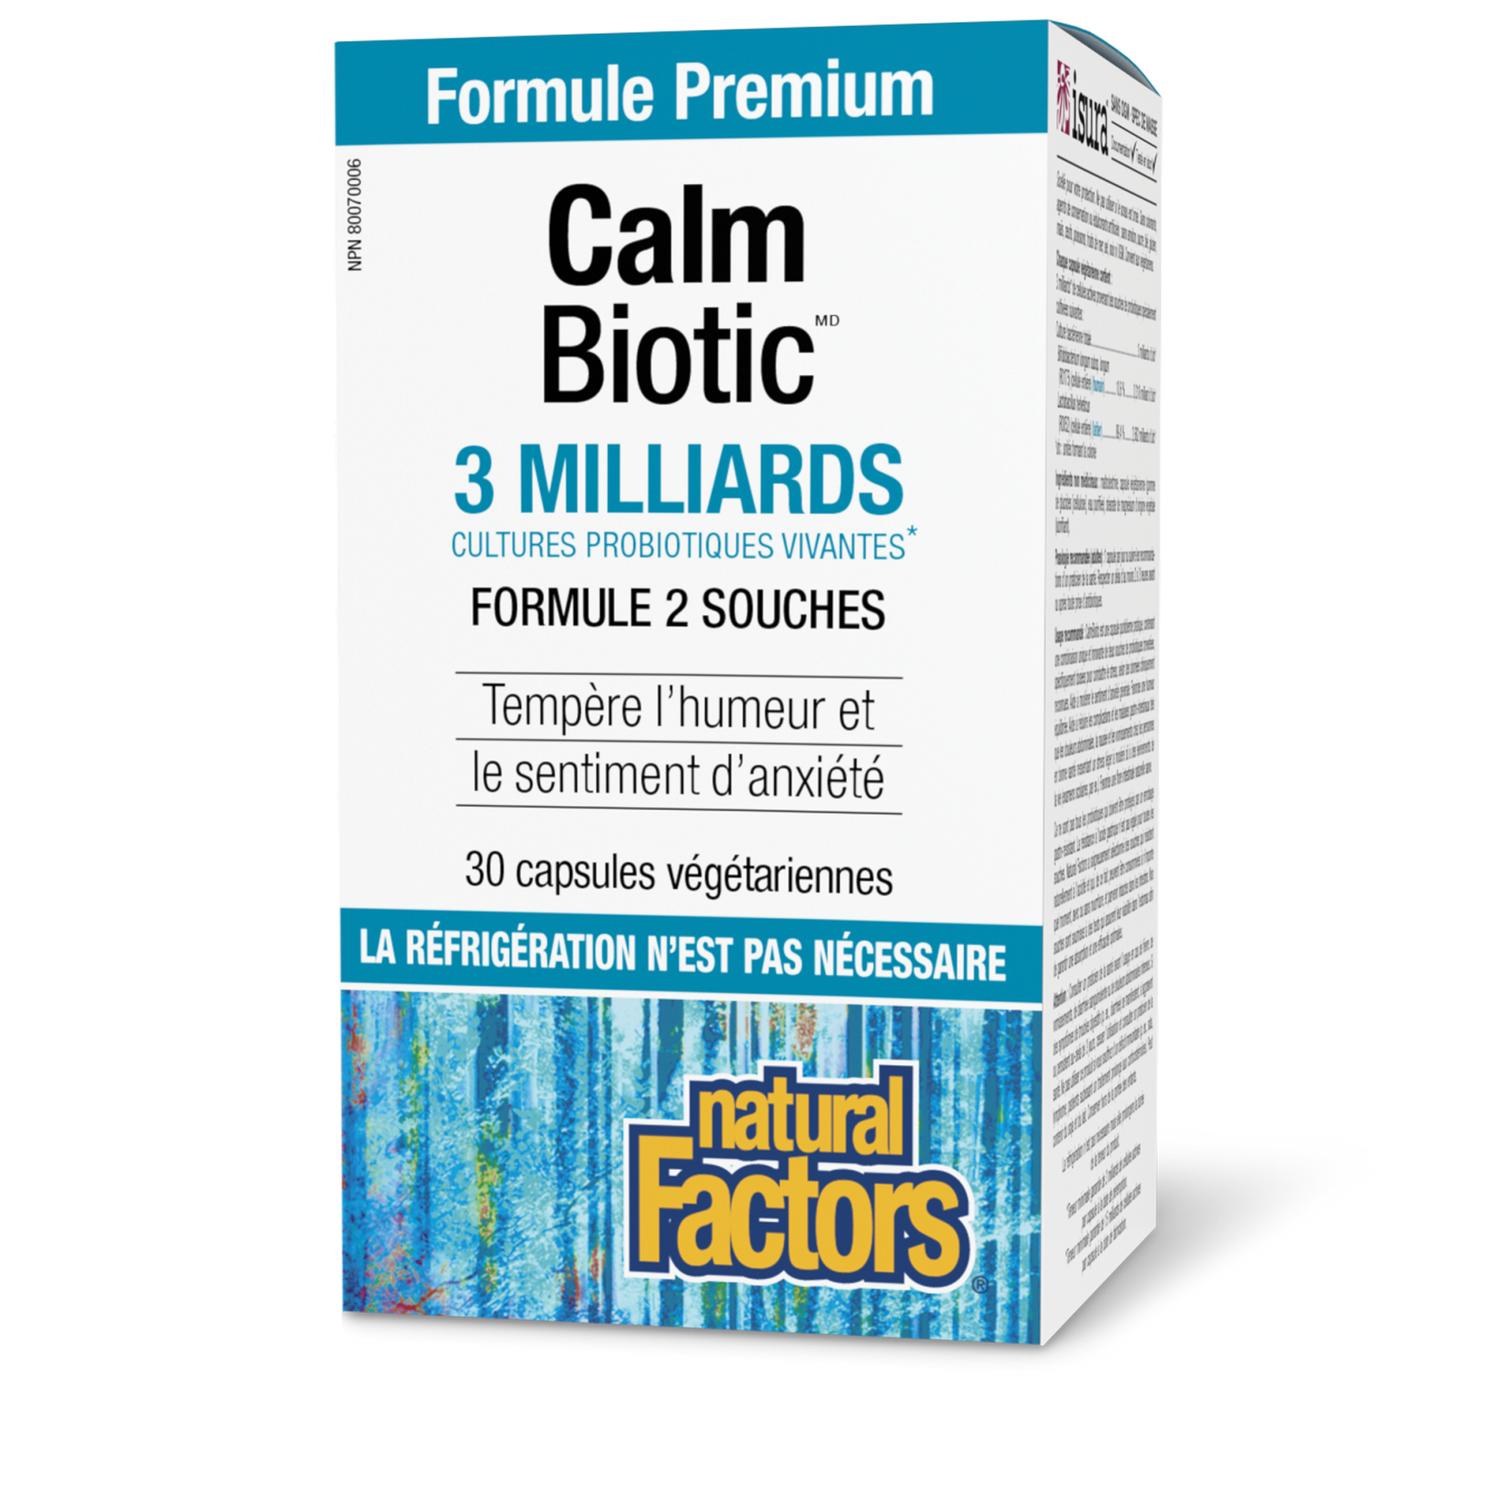 Calm Biotic 3 milliards de cultures probiotiques vivantes, Natural Factors|v|image|1860